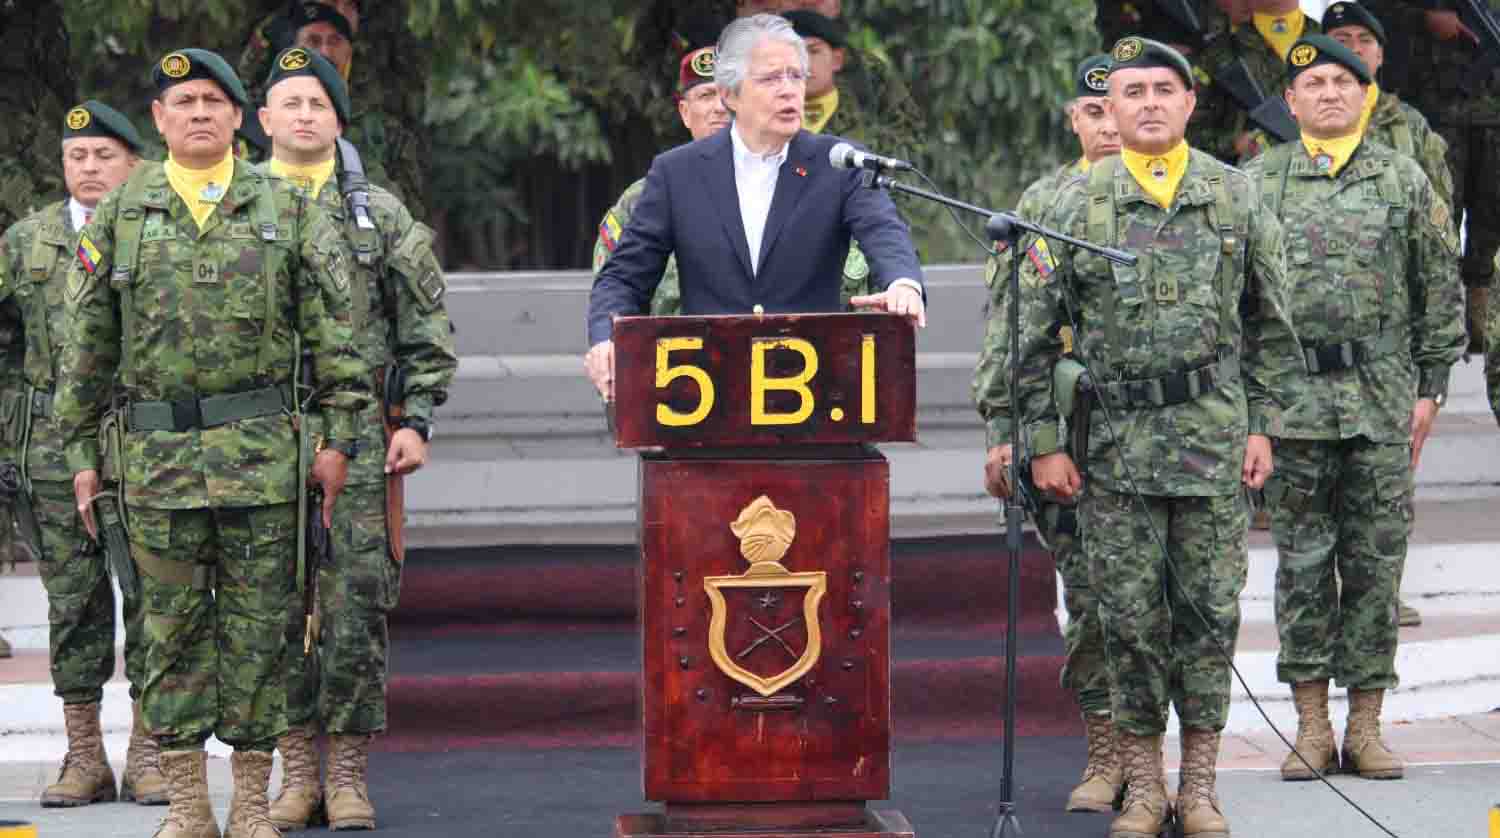 El presidente Guillermo Lasso anunció que los militares gozarán de 10 días libres durante las fiestas de fin de año. Foto: Twitter FF.AA. Ecuador